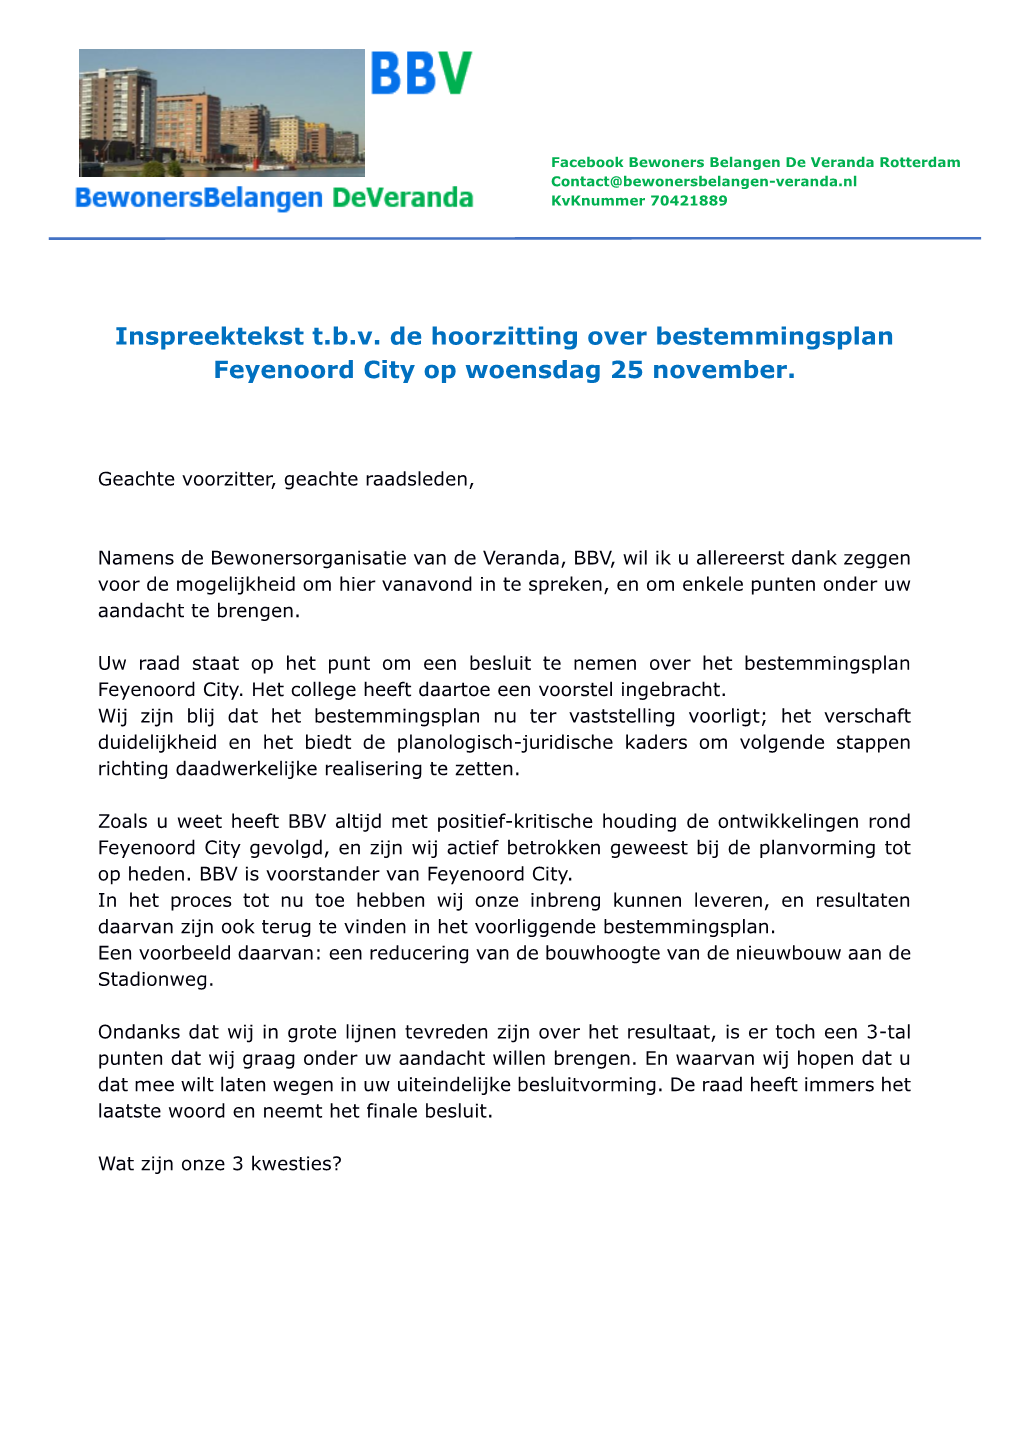 Inspreektekst T.B.V. De Hoorzitting Over Bestemmingsplan Feyenoord City Op Woensdag 25 November